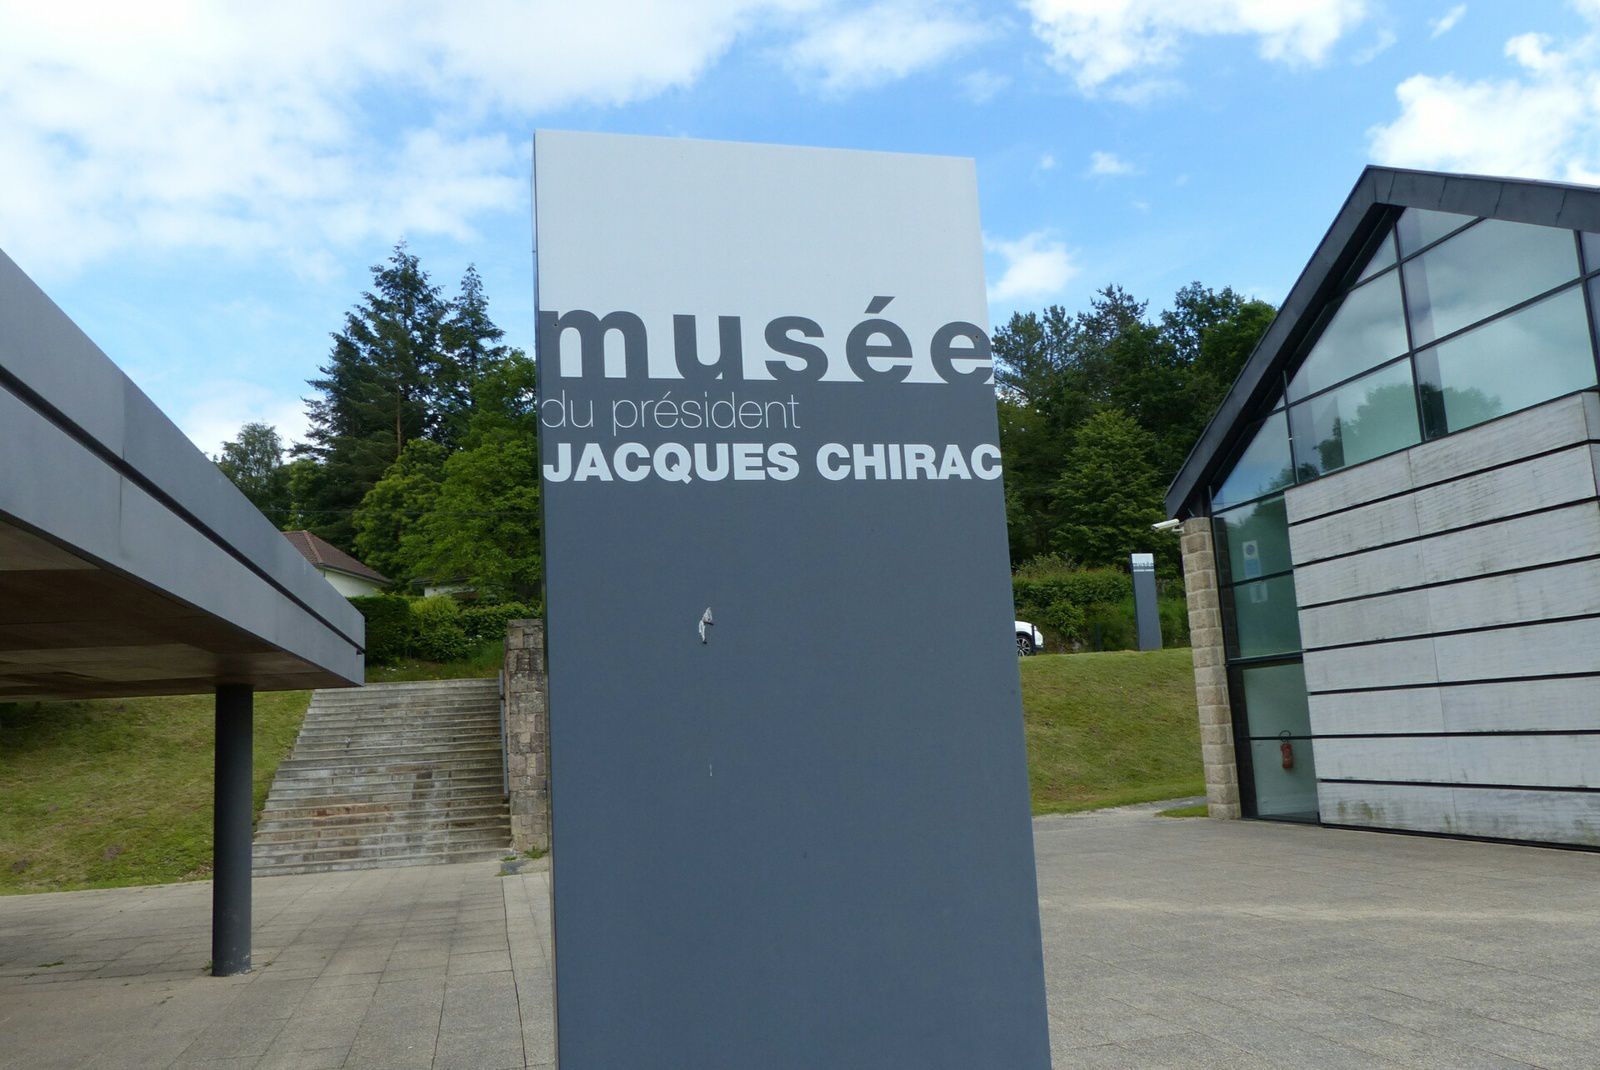 Museé du président Jacques Chirac